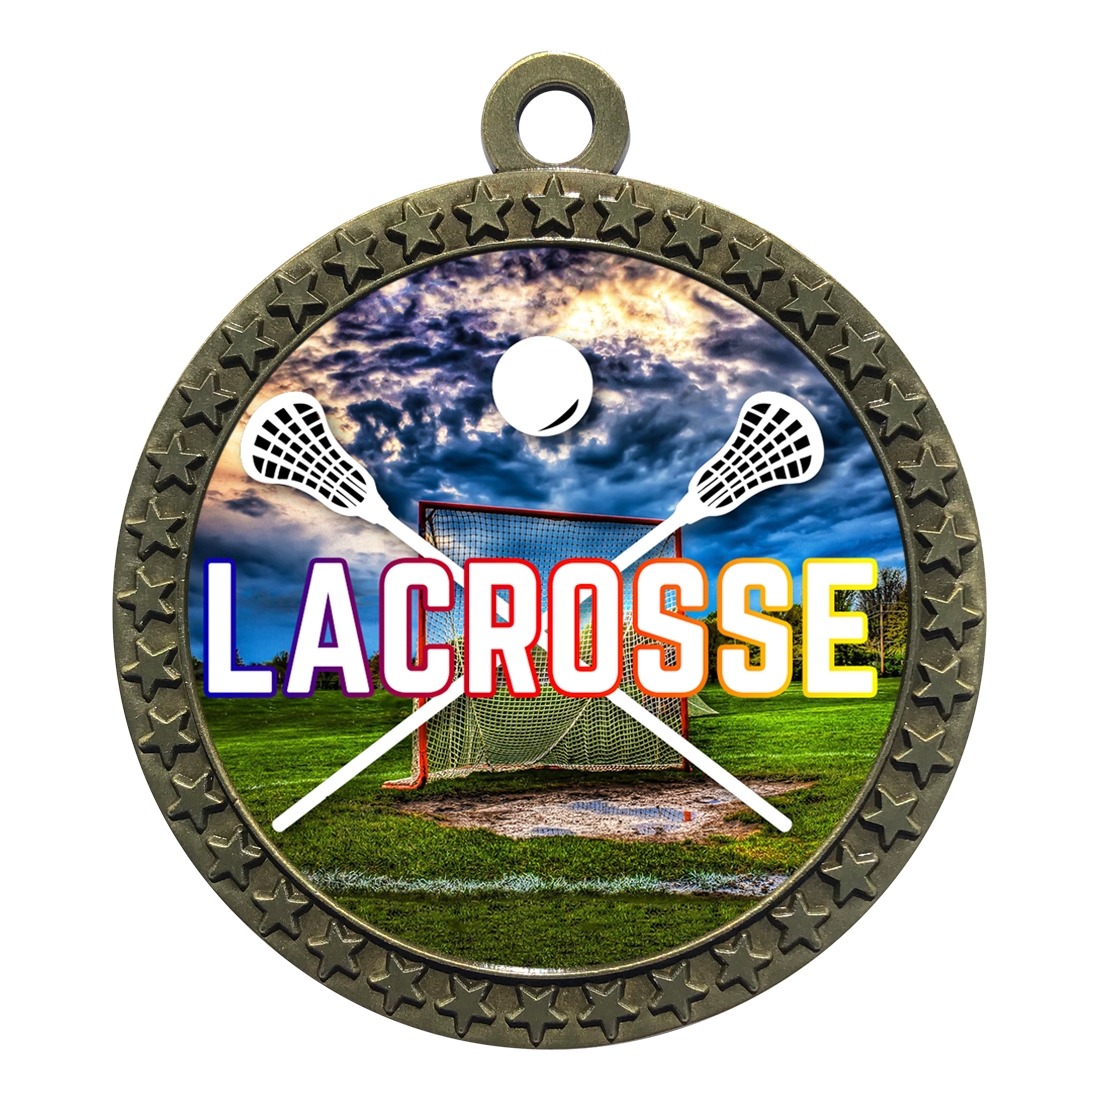 2-1/2" Lacrosse Medal